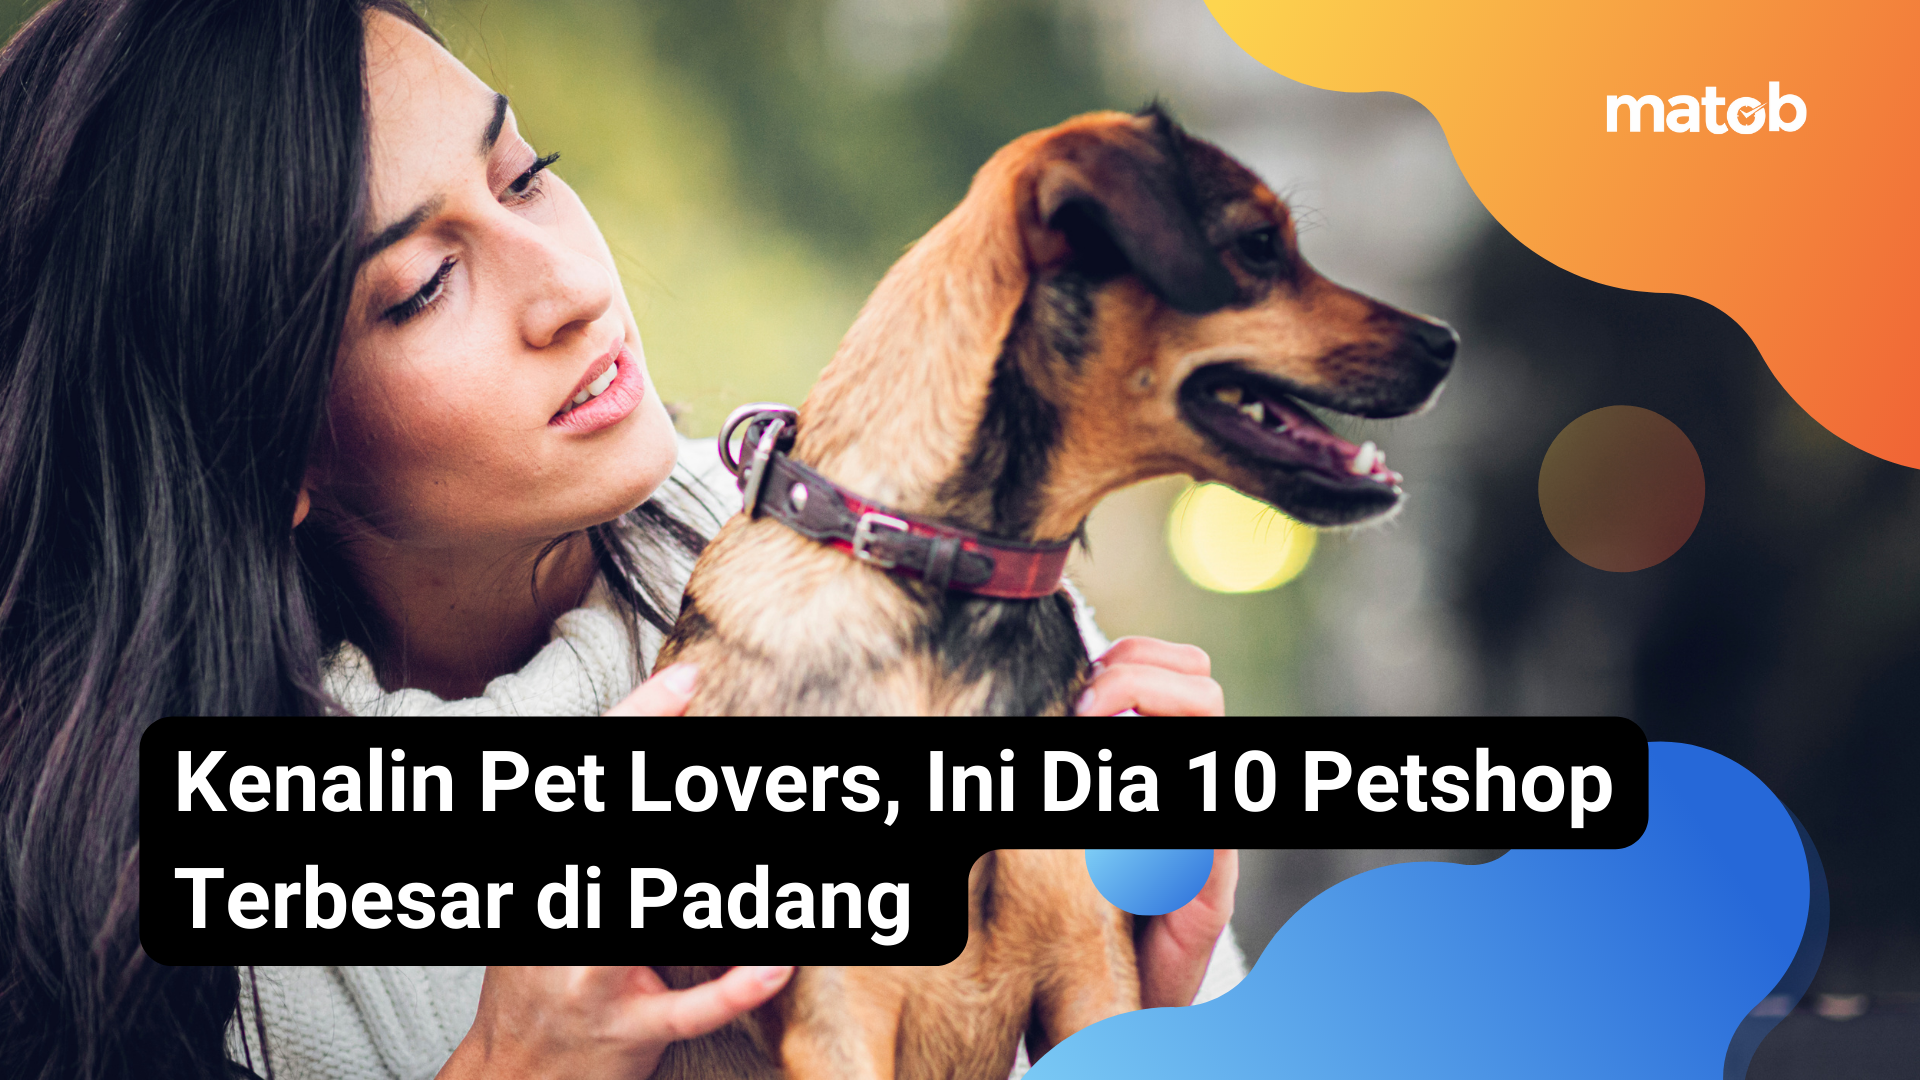 5.1 Matob Bisnis Kenalin Pet Lovers, Ini Dia 10 Petshop Terbesar di Padang